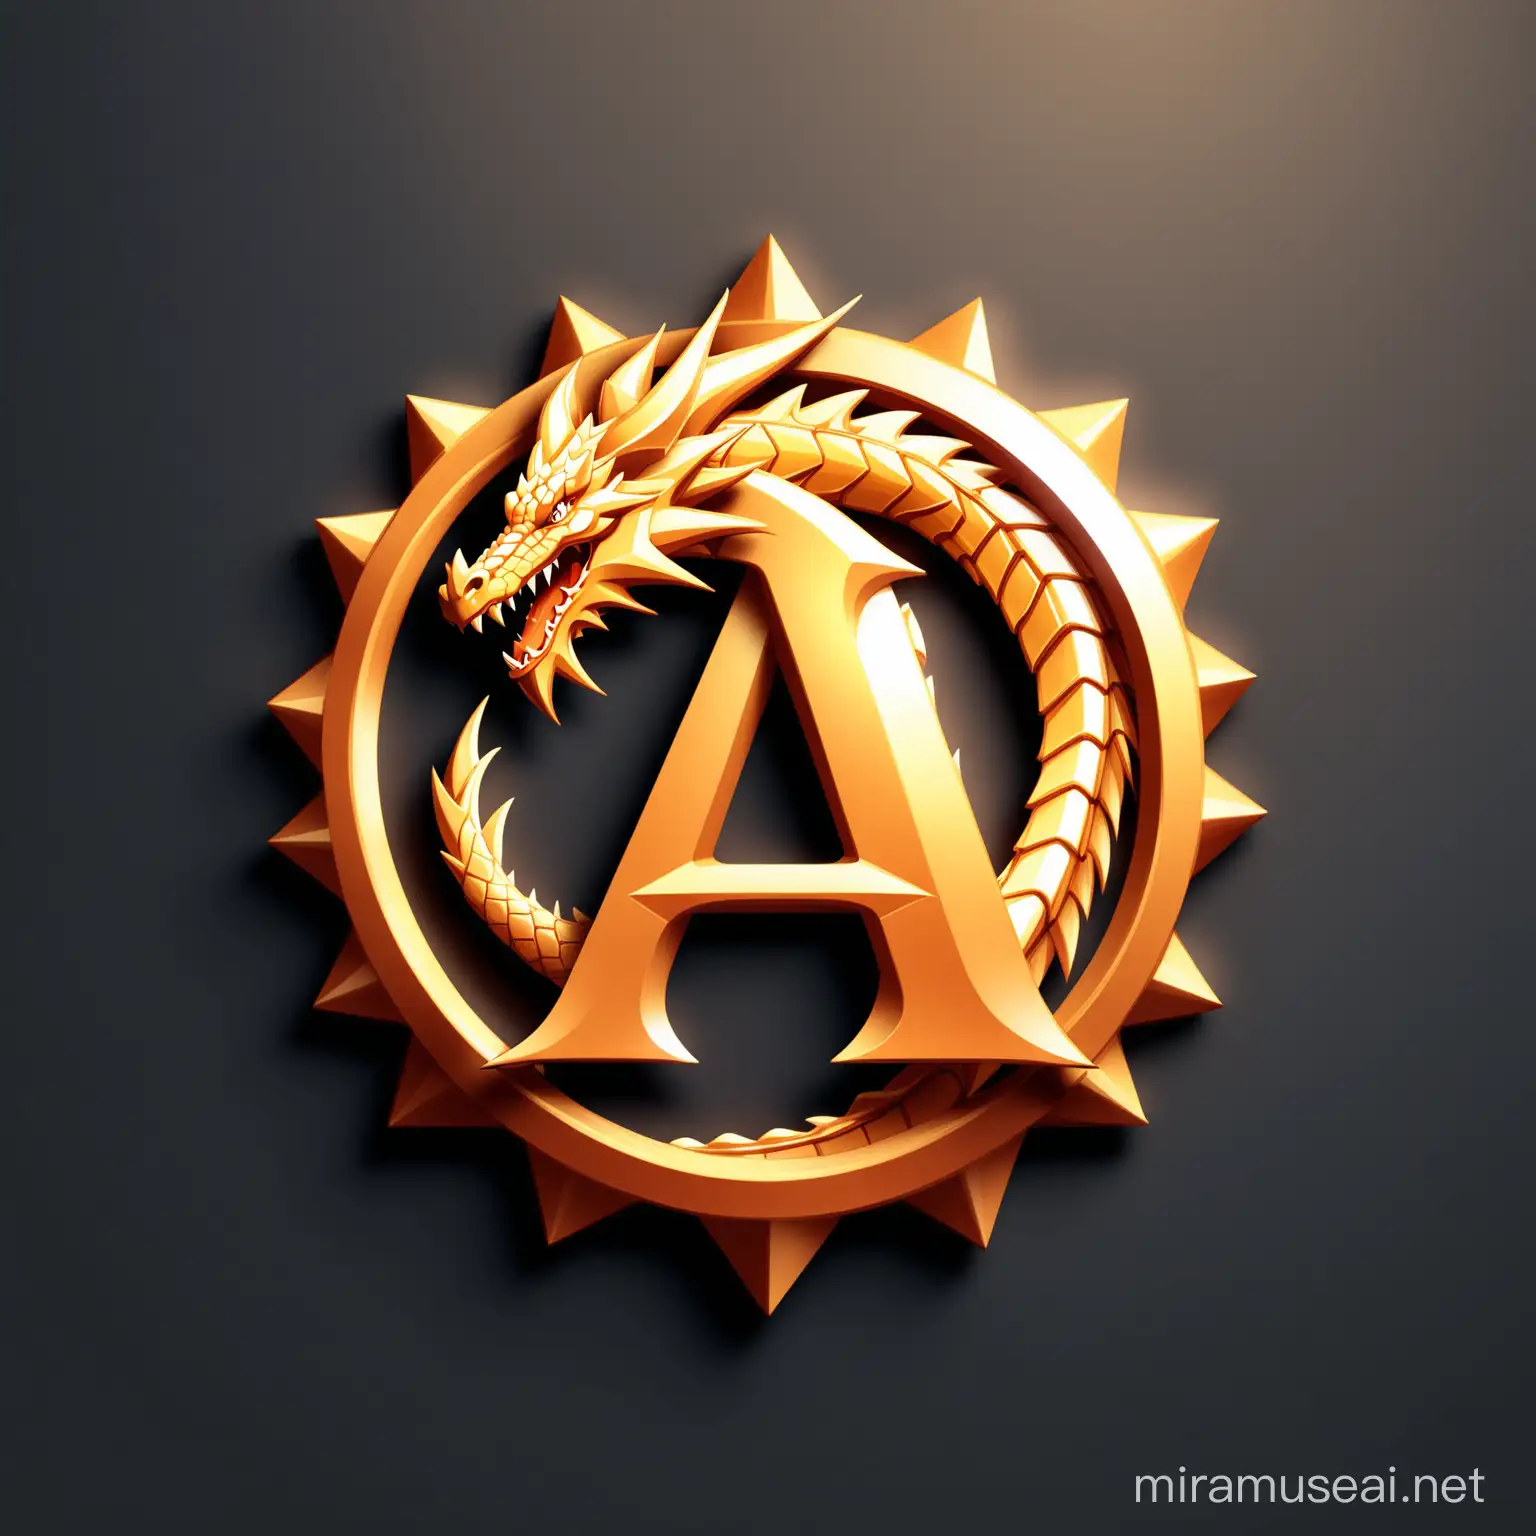 Logo "A" icon design dragon 3D